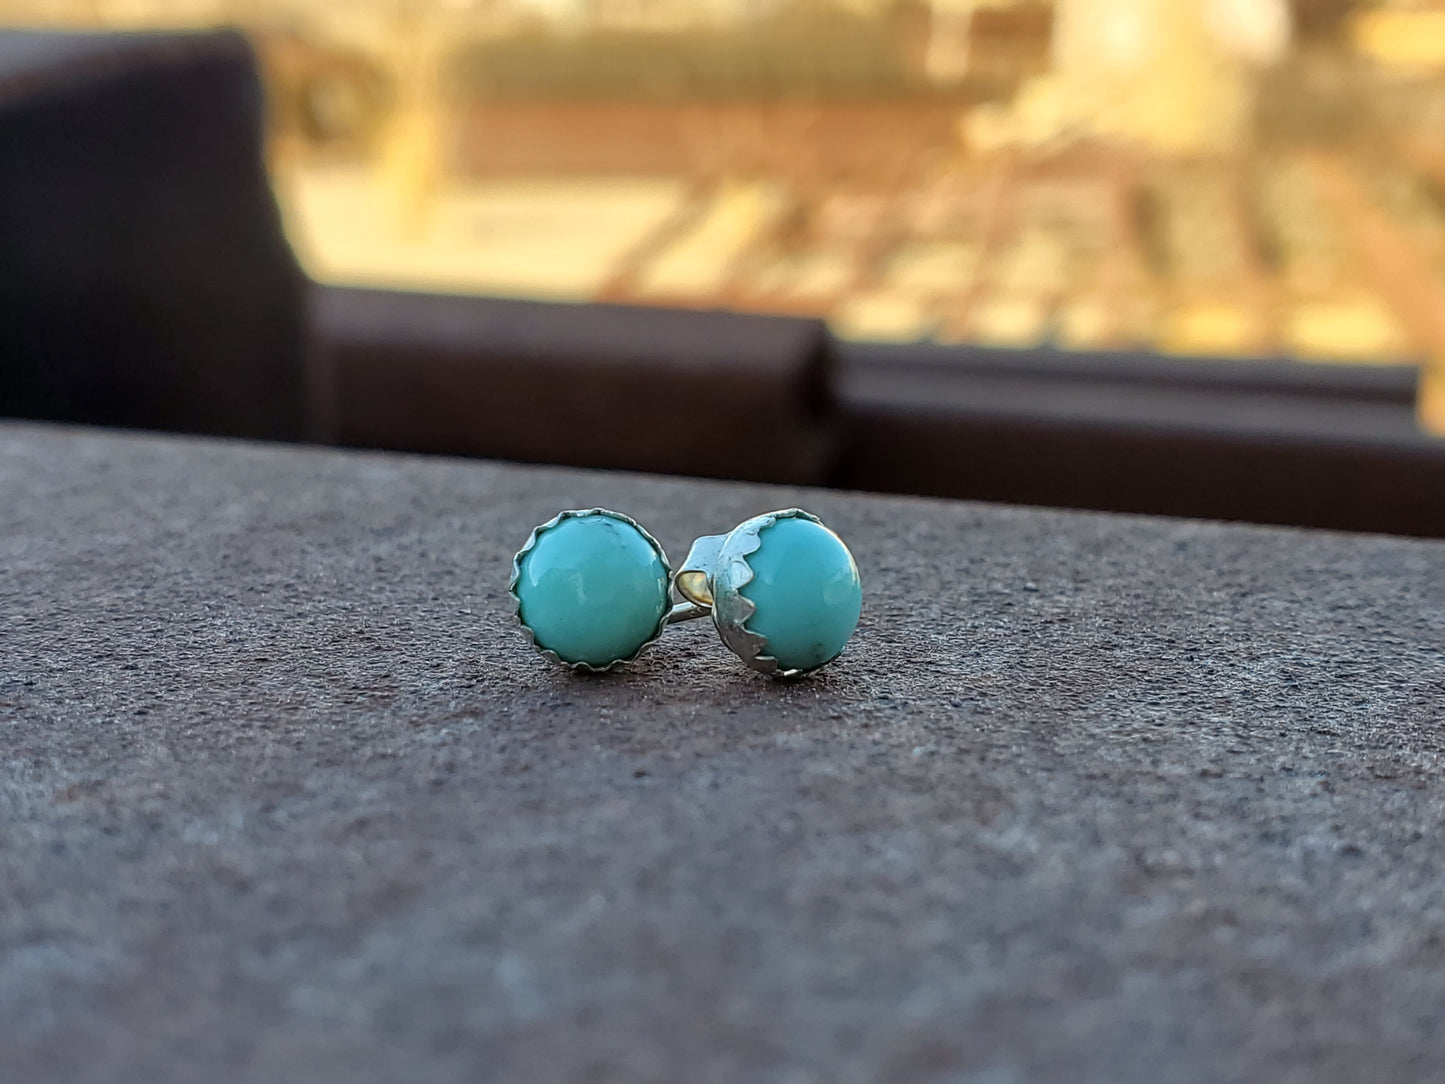 Turquoise Stud Earrings, Western stud earrings, unique earrings, cowgirl earrings, cowgirl jewelry, turquoise jewelry